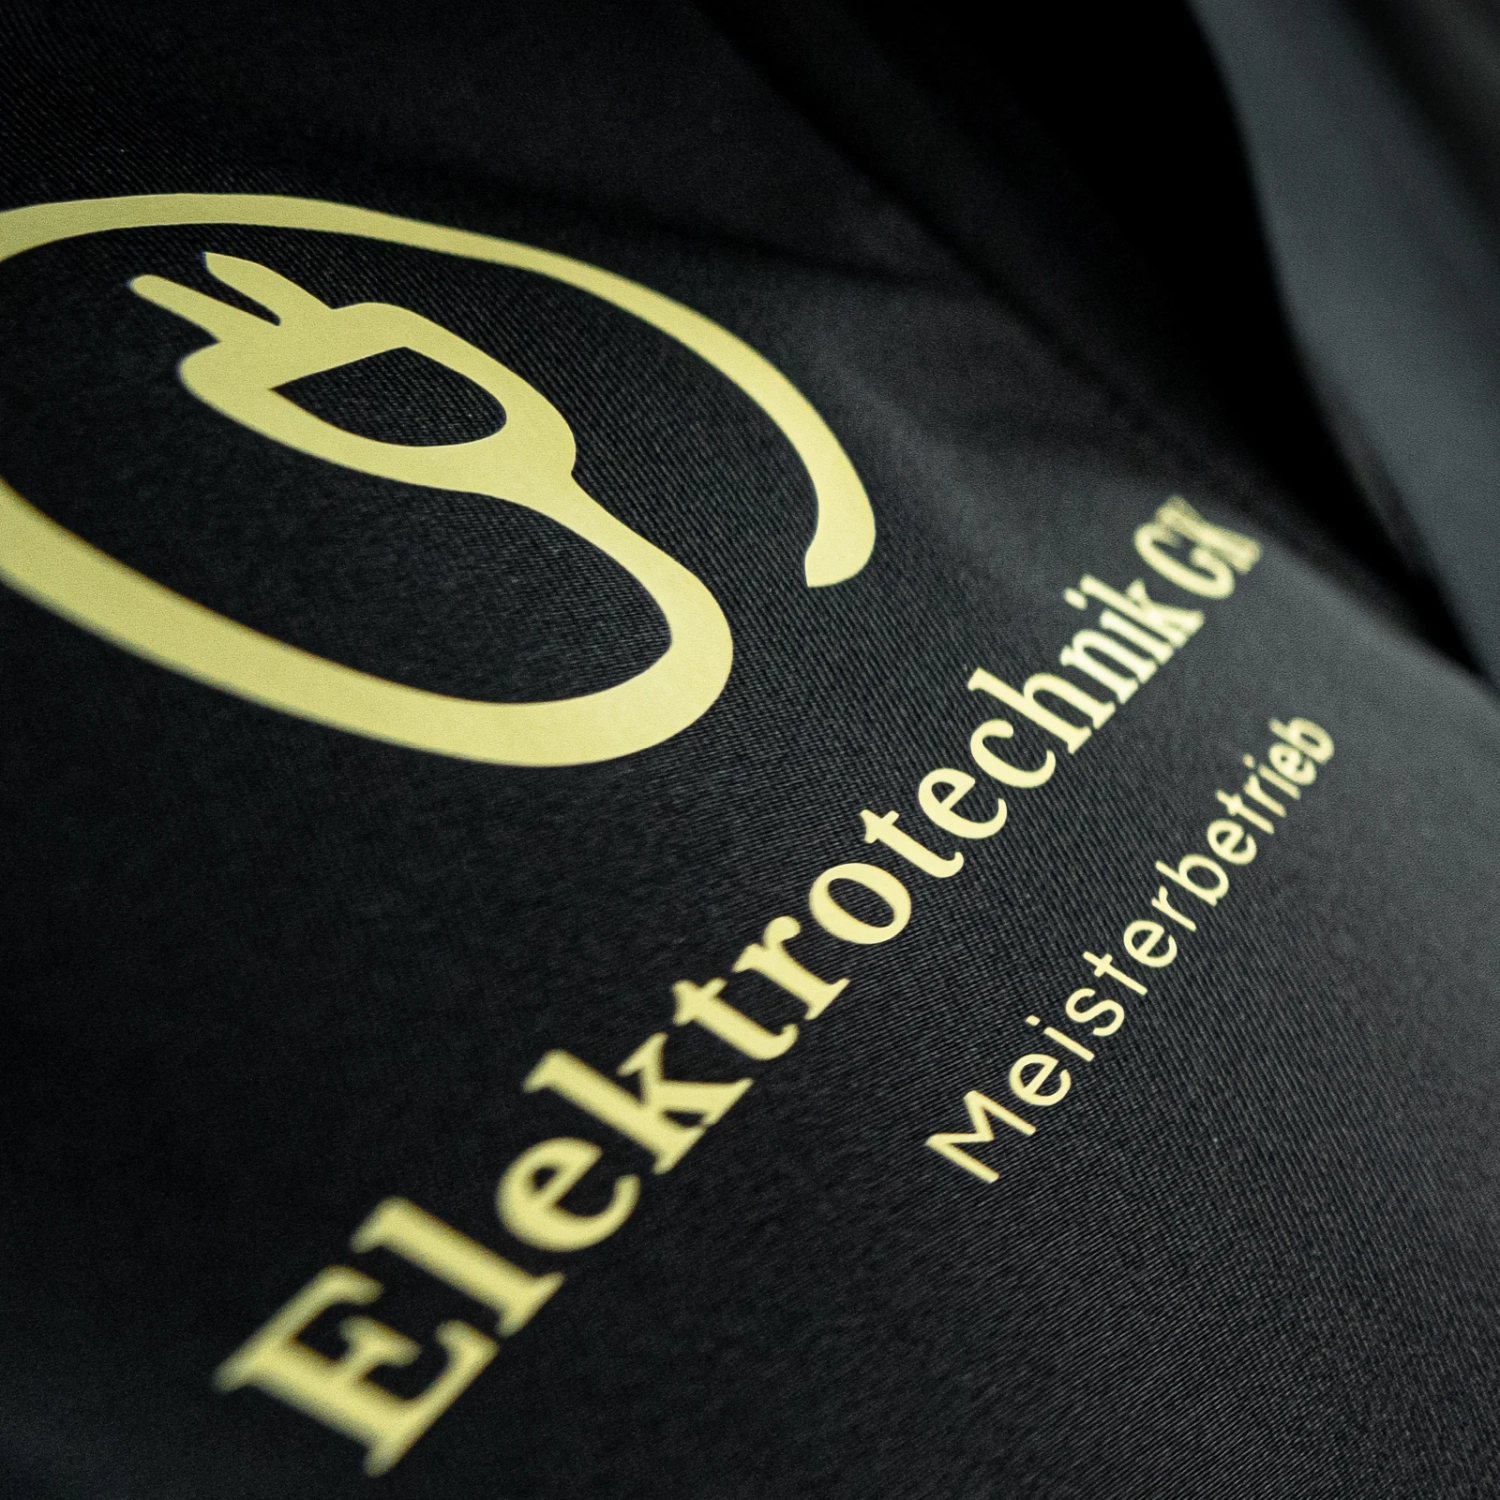 Elektrotechnik GK - Firmen T-Shirt